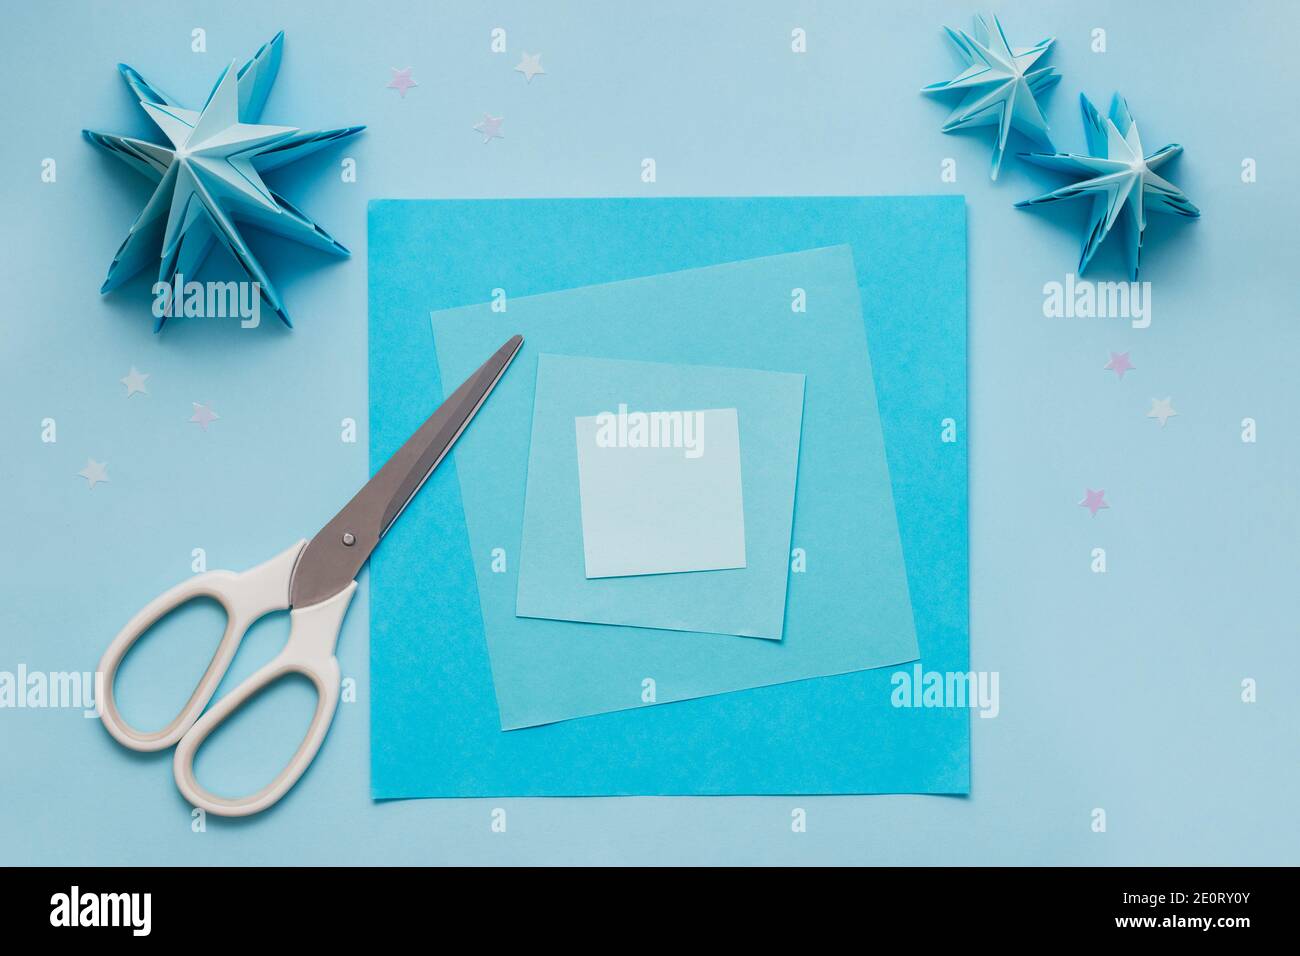 Arbre de Noël en relief origami simple en papier bleu. Instructions étape par étape, étape 1. Préparez des feuilles de papier carrées de différentes couleurs et de différents formats Banque D'Images